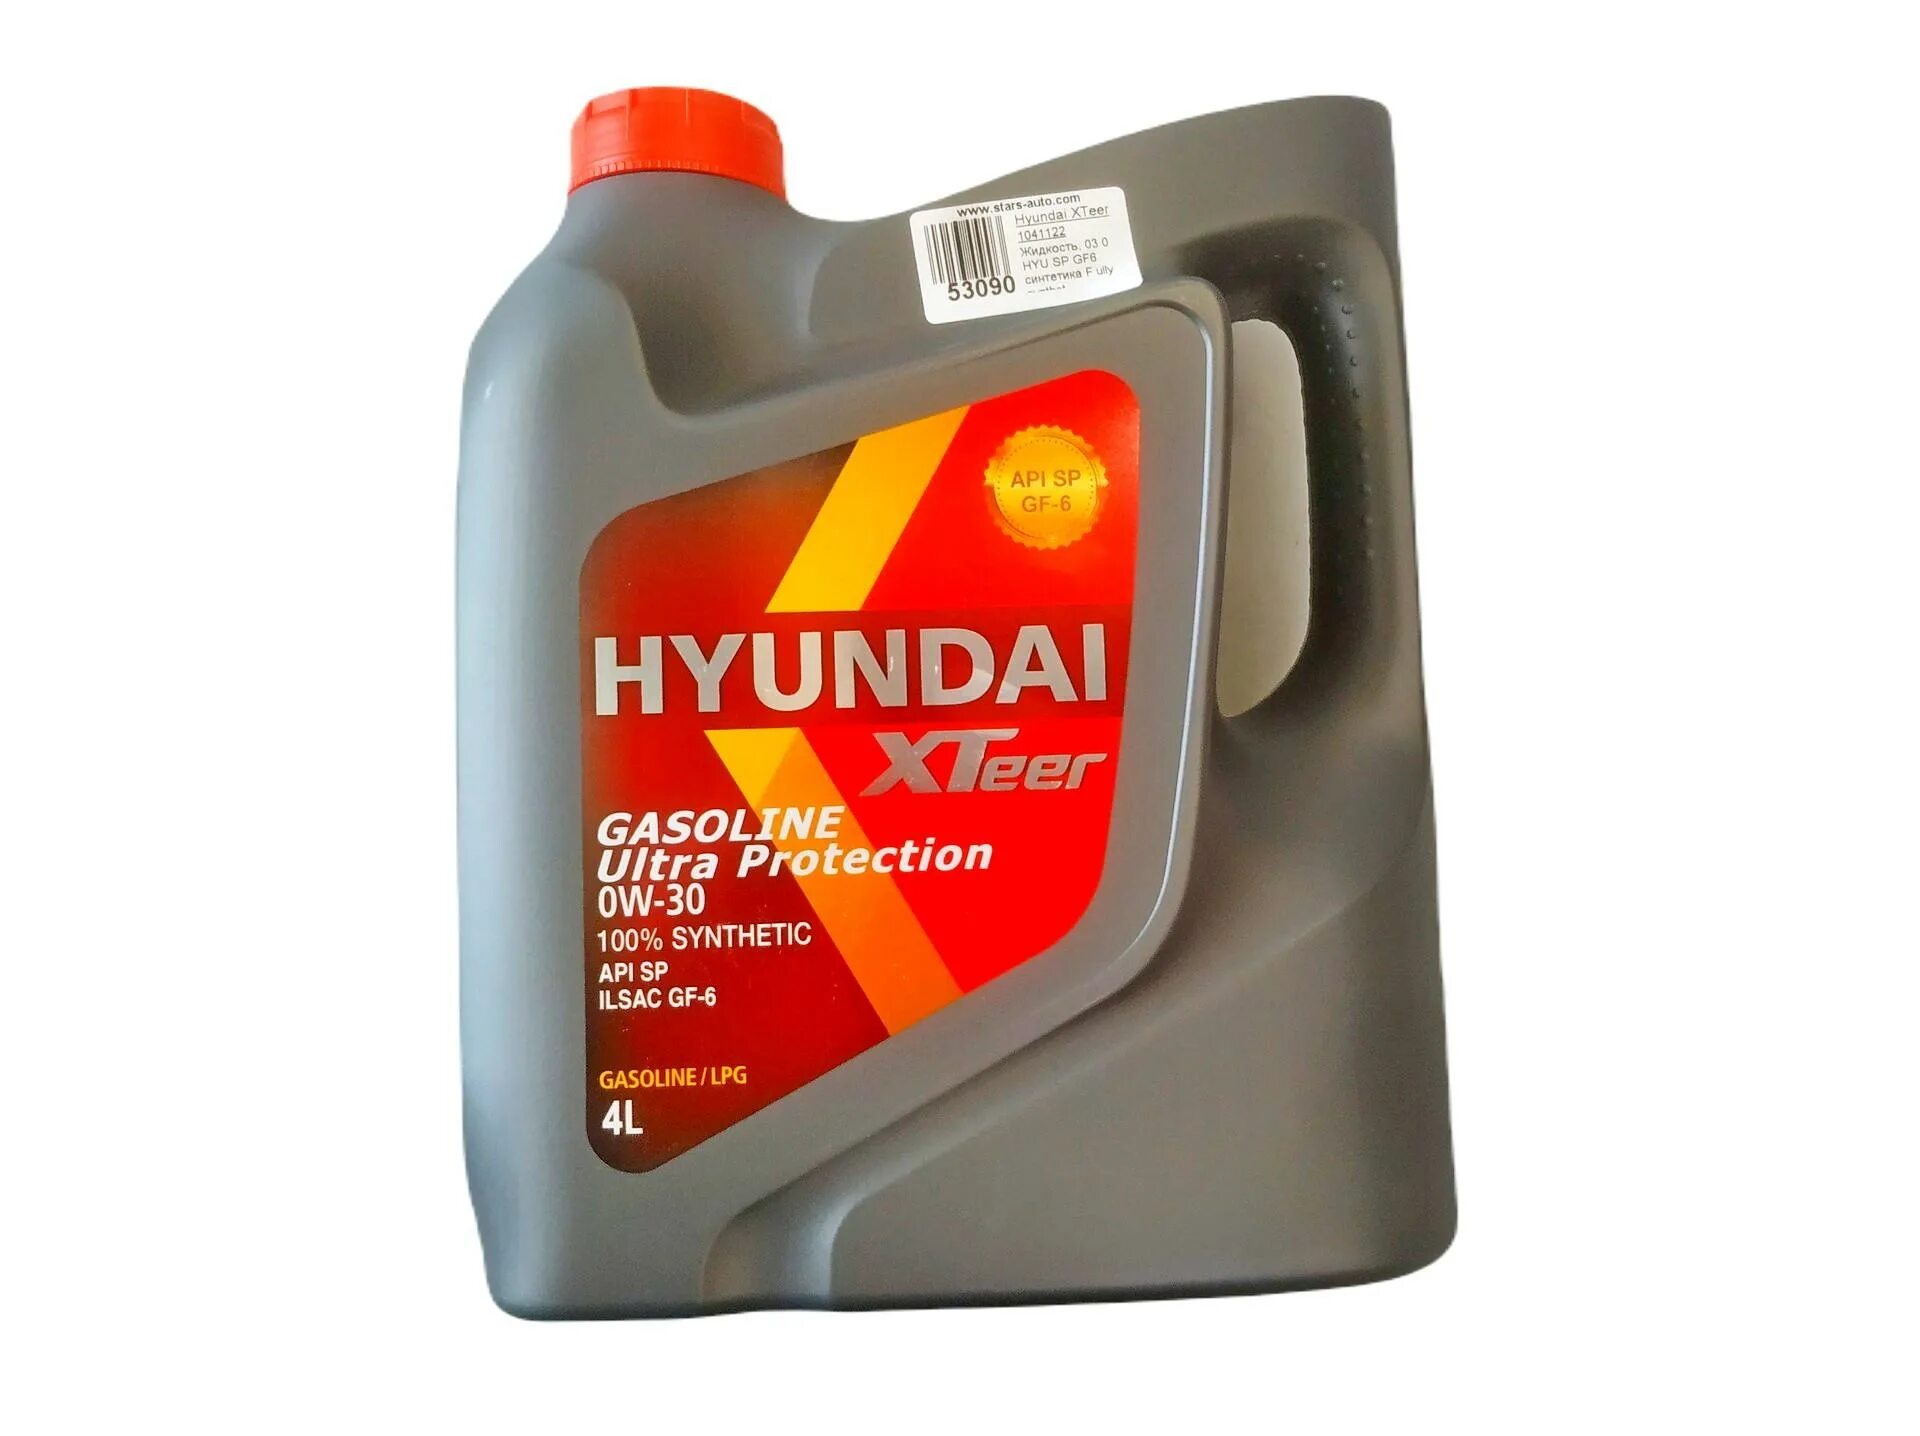 Hyundai XTEER Ultra Protection 1l. Hyundai XTEER 1041412. Hyundai XTEER Gear Oil-5 75w90. Hyundai XTEER 1041126 Hyundai XTEER (g800) gasoline Ultra Protection.